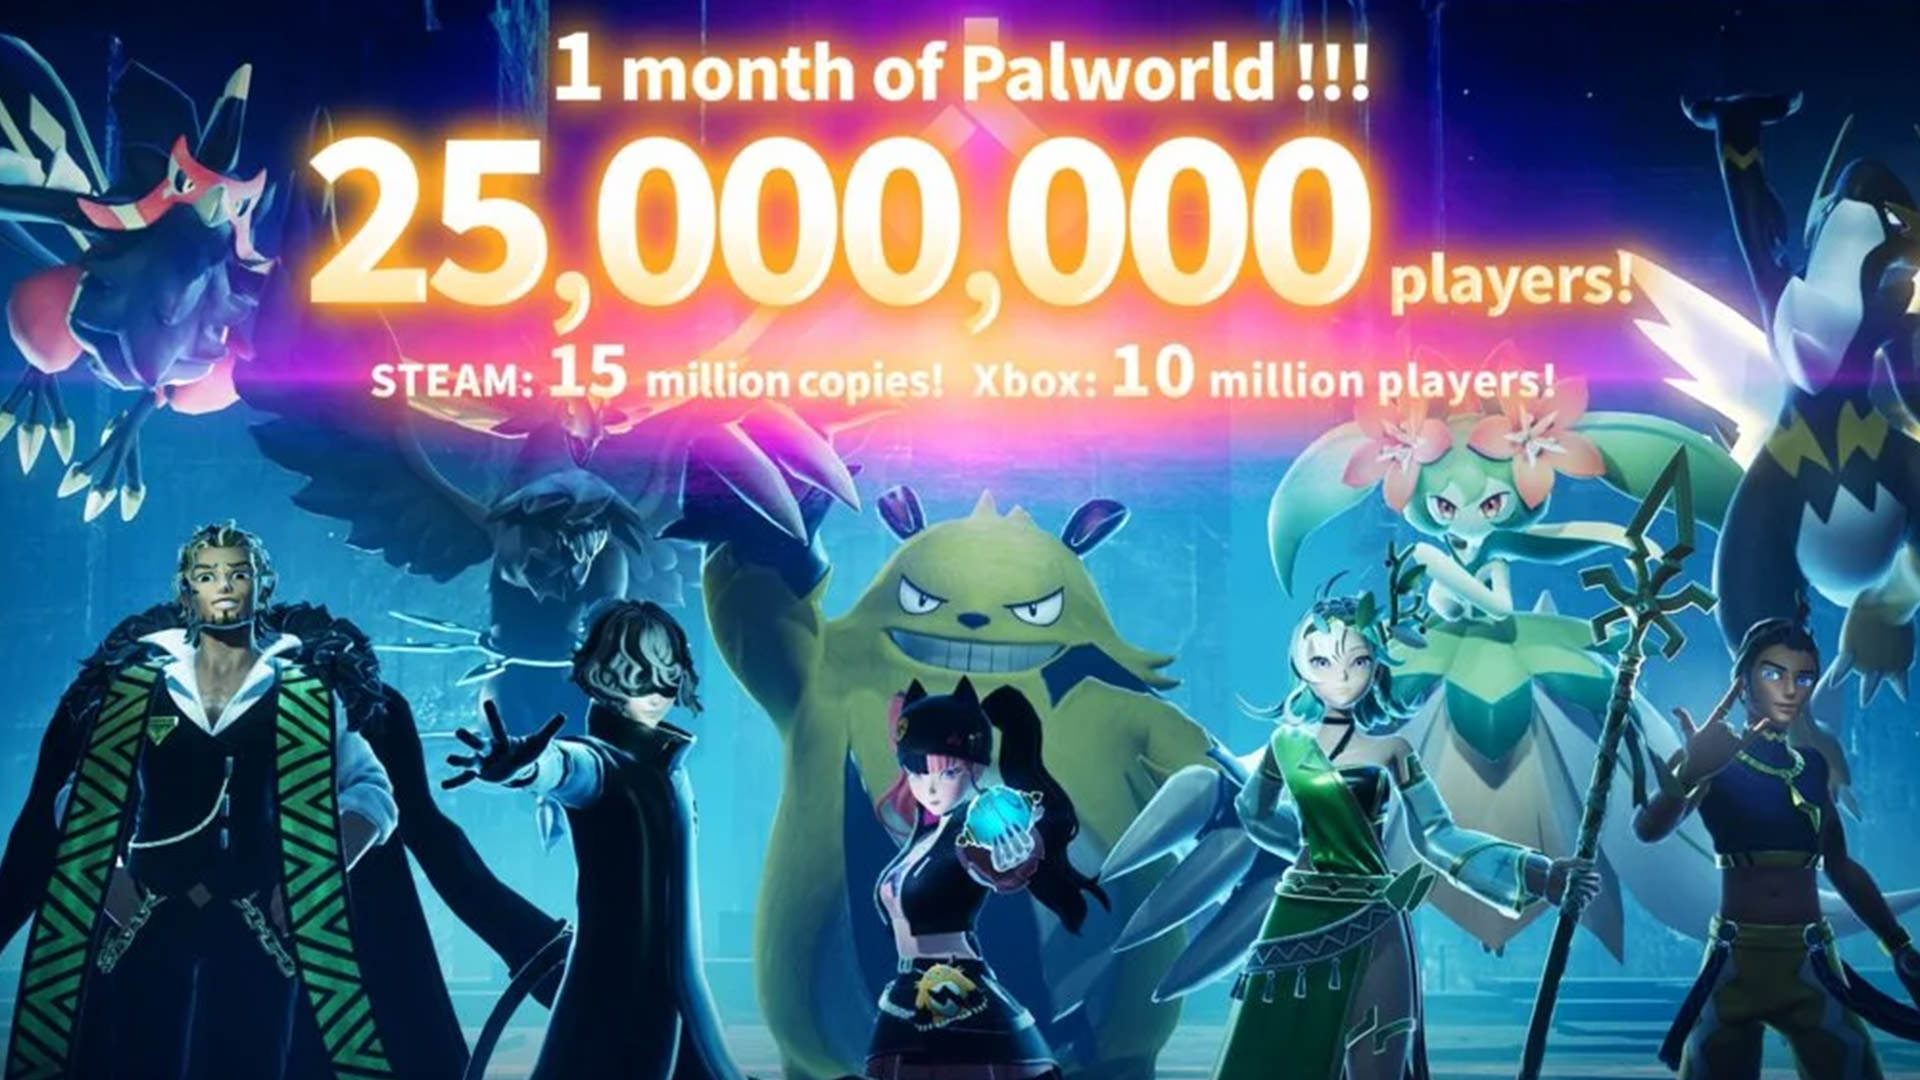  پوستر ۲۵ میلیون بازیکنی Palworld